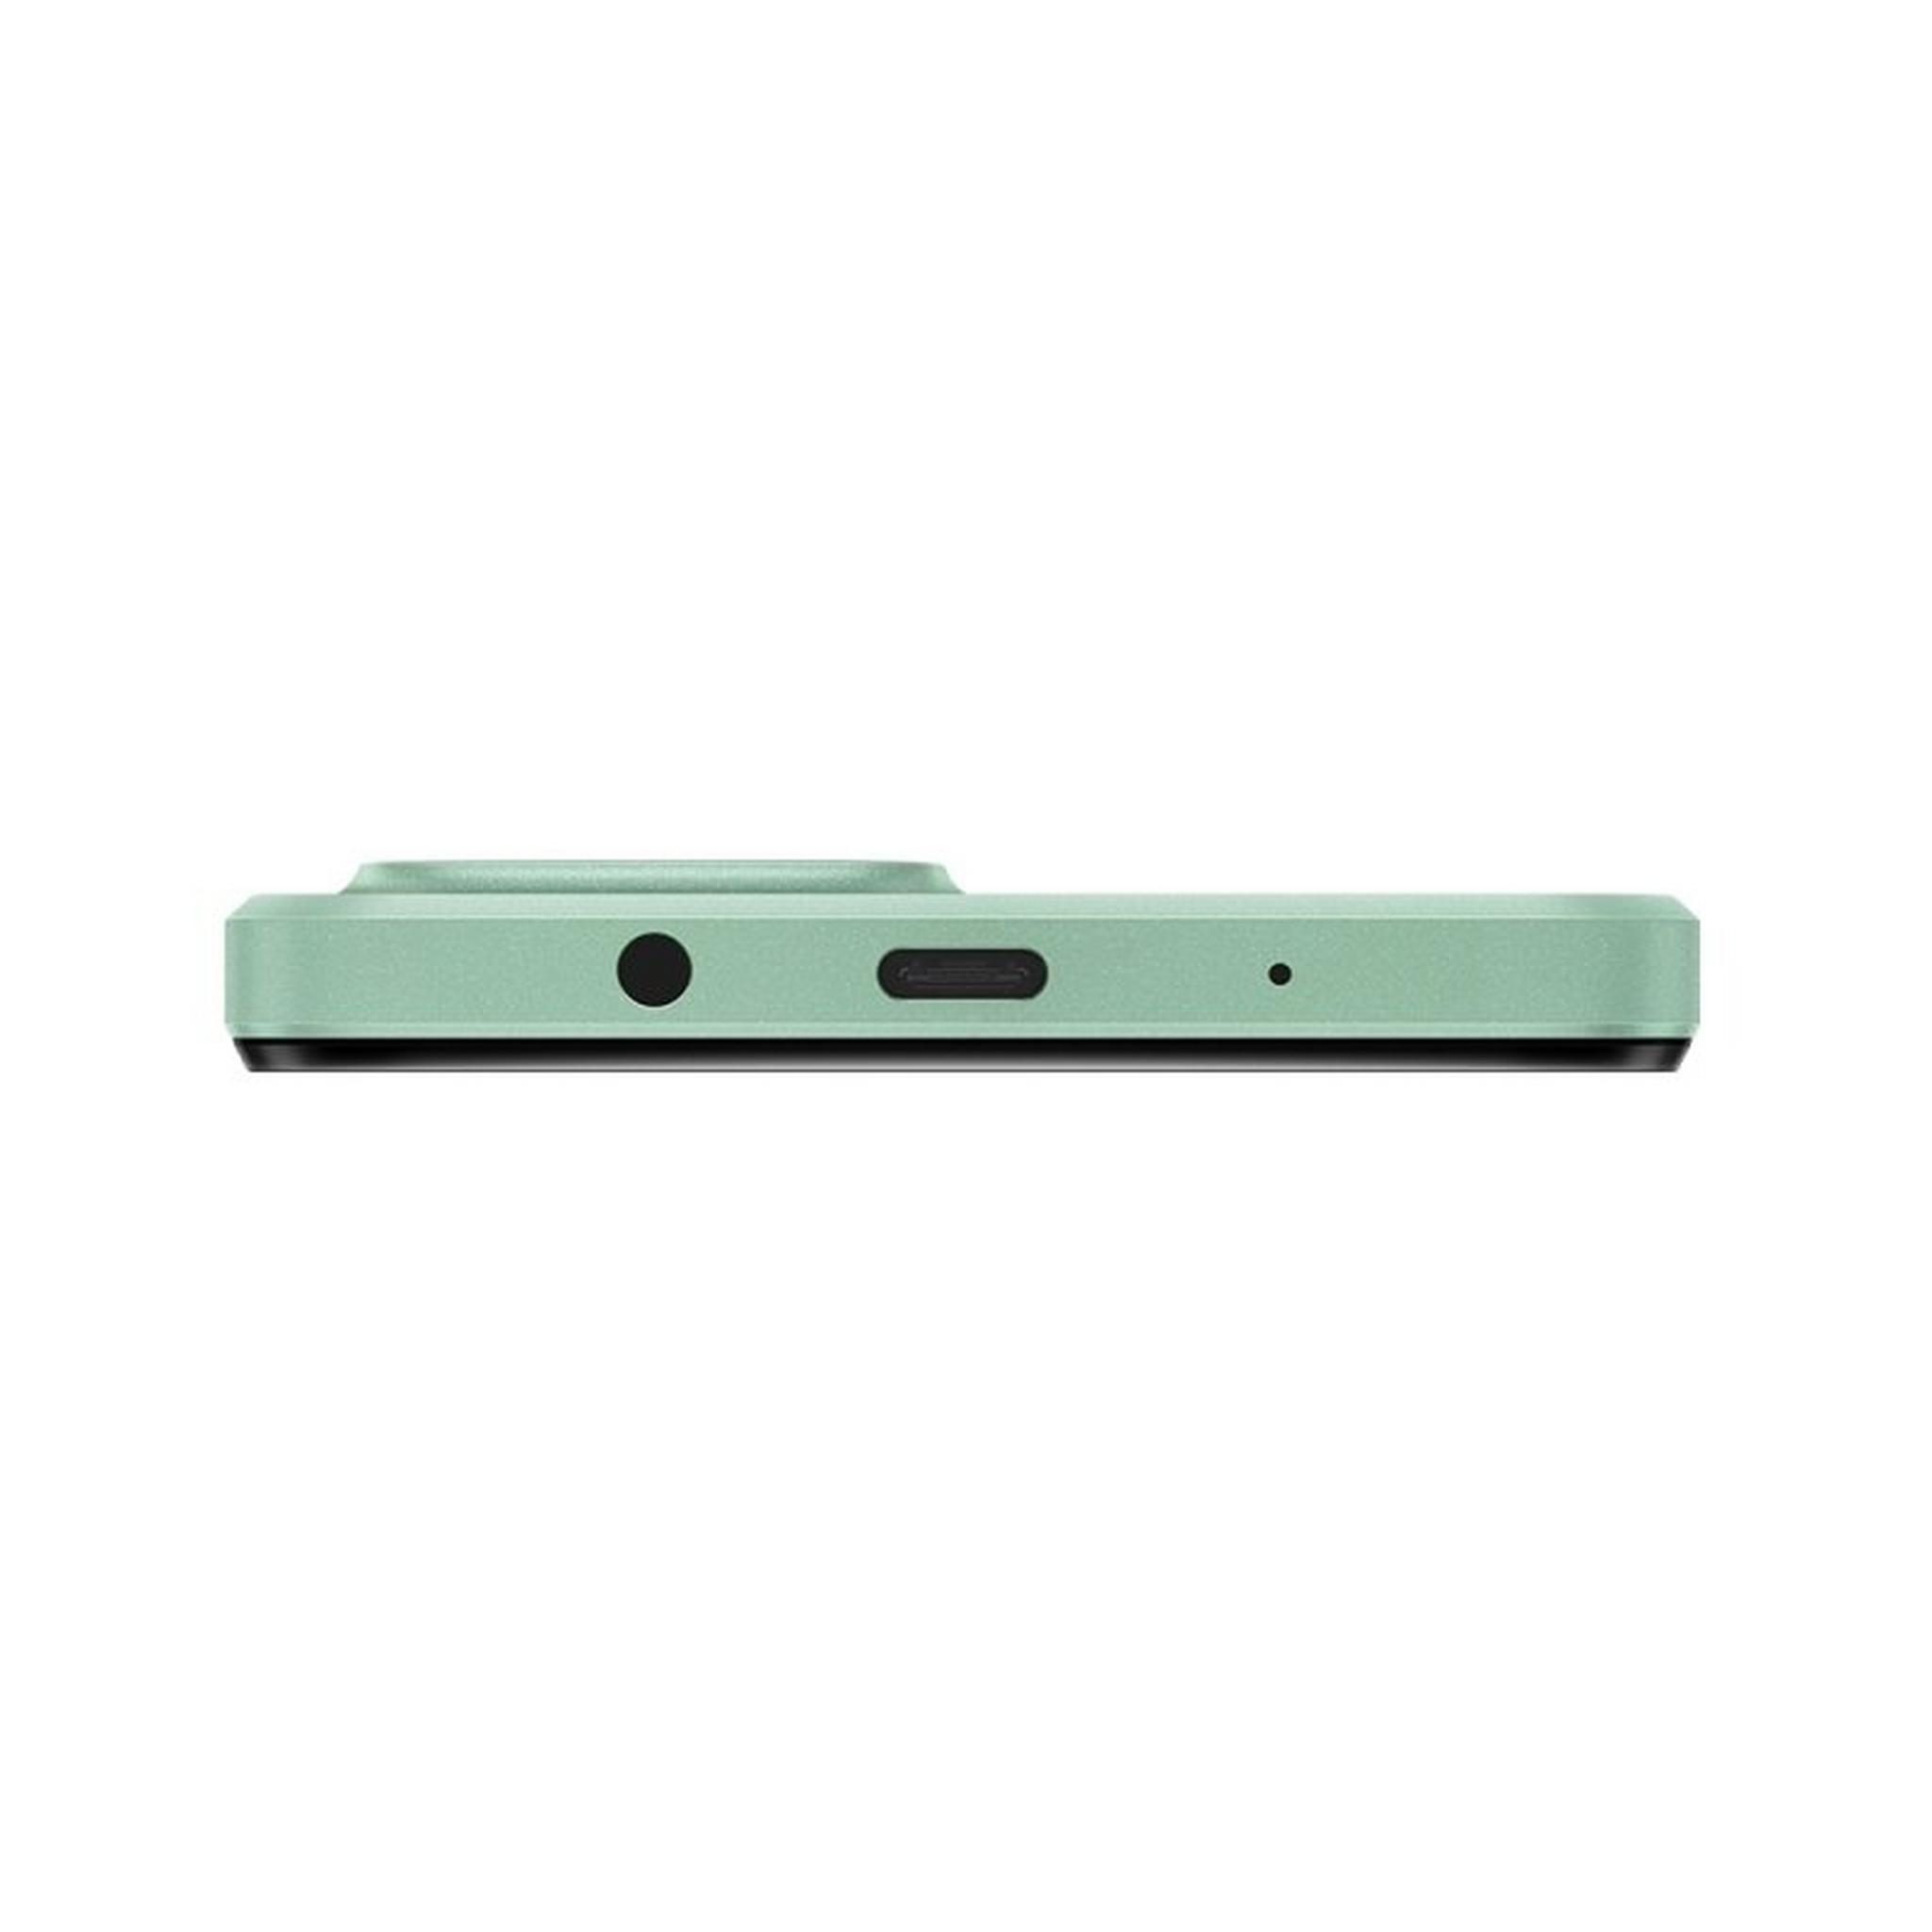 هاتف هواوي نوفا واي 61 بسعة 64 جيجابايت - أخضر